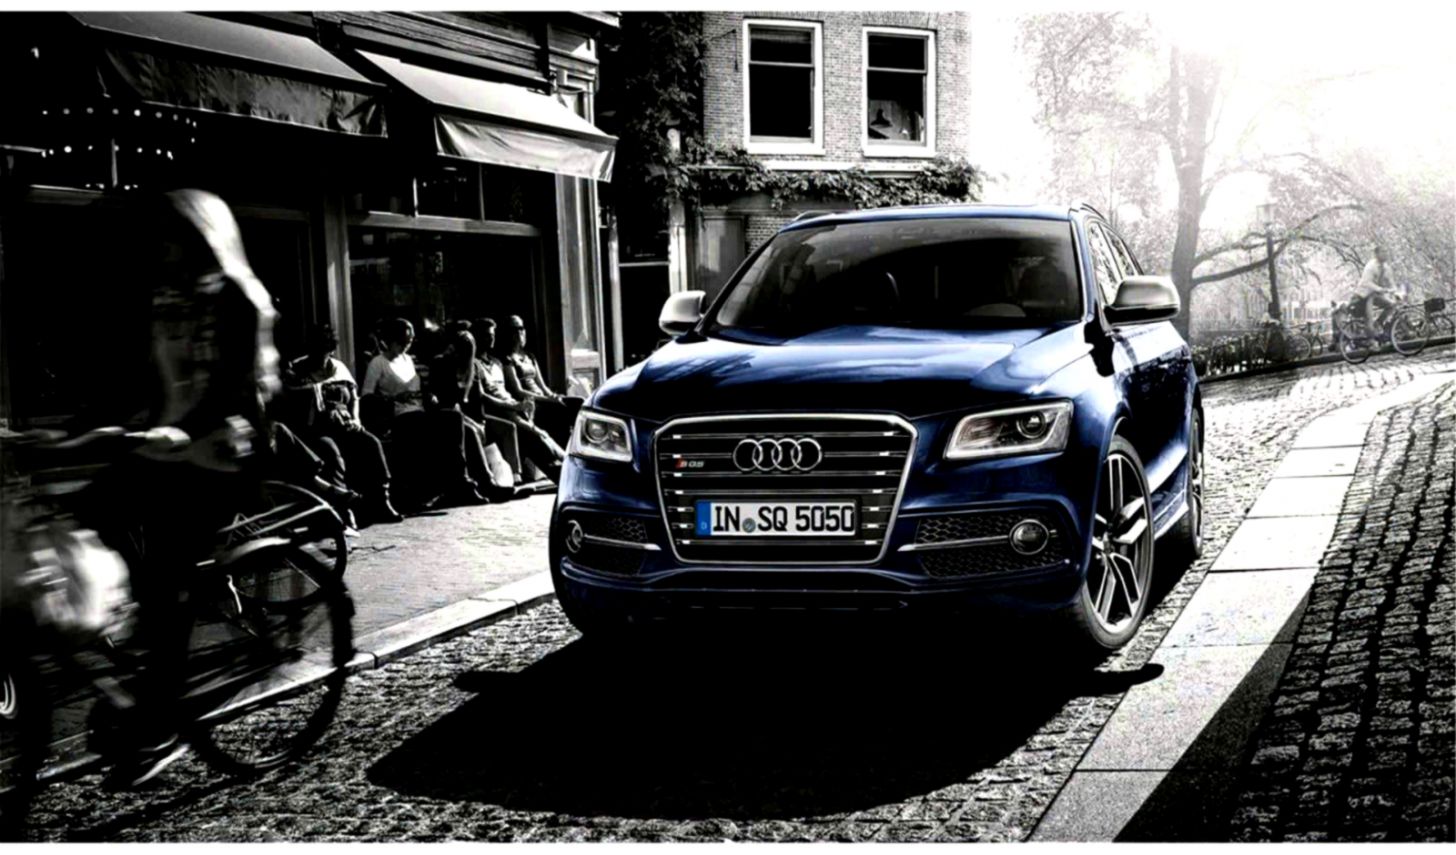 Audi Sq5 Intelligent Crossover Zillion Cars - Audi Sq5 - HD Wallpaper 